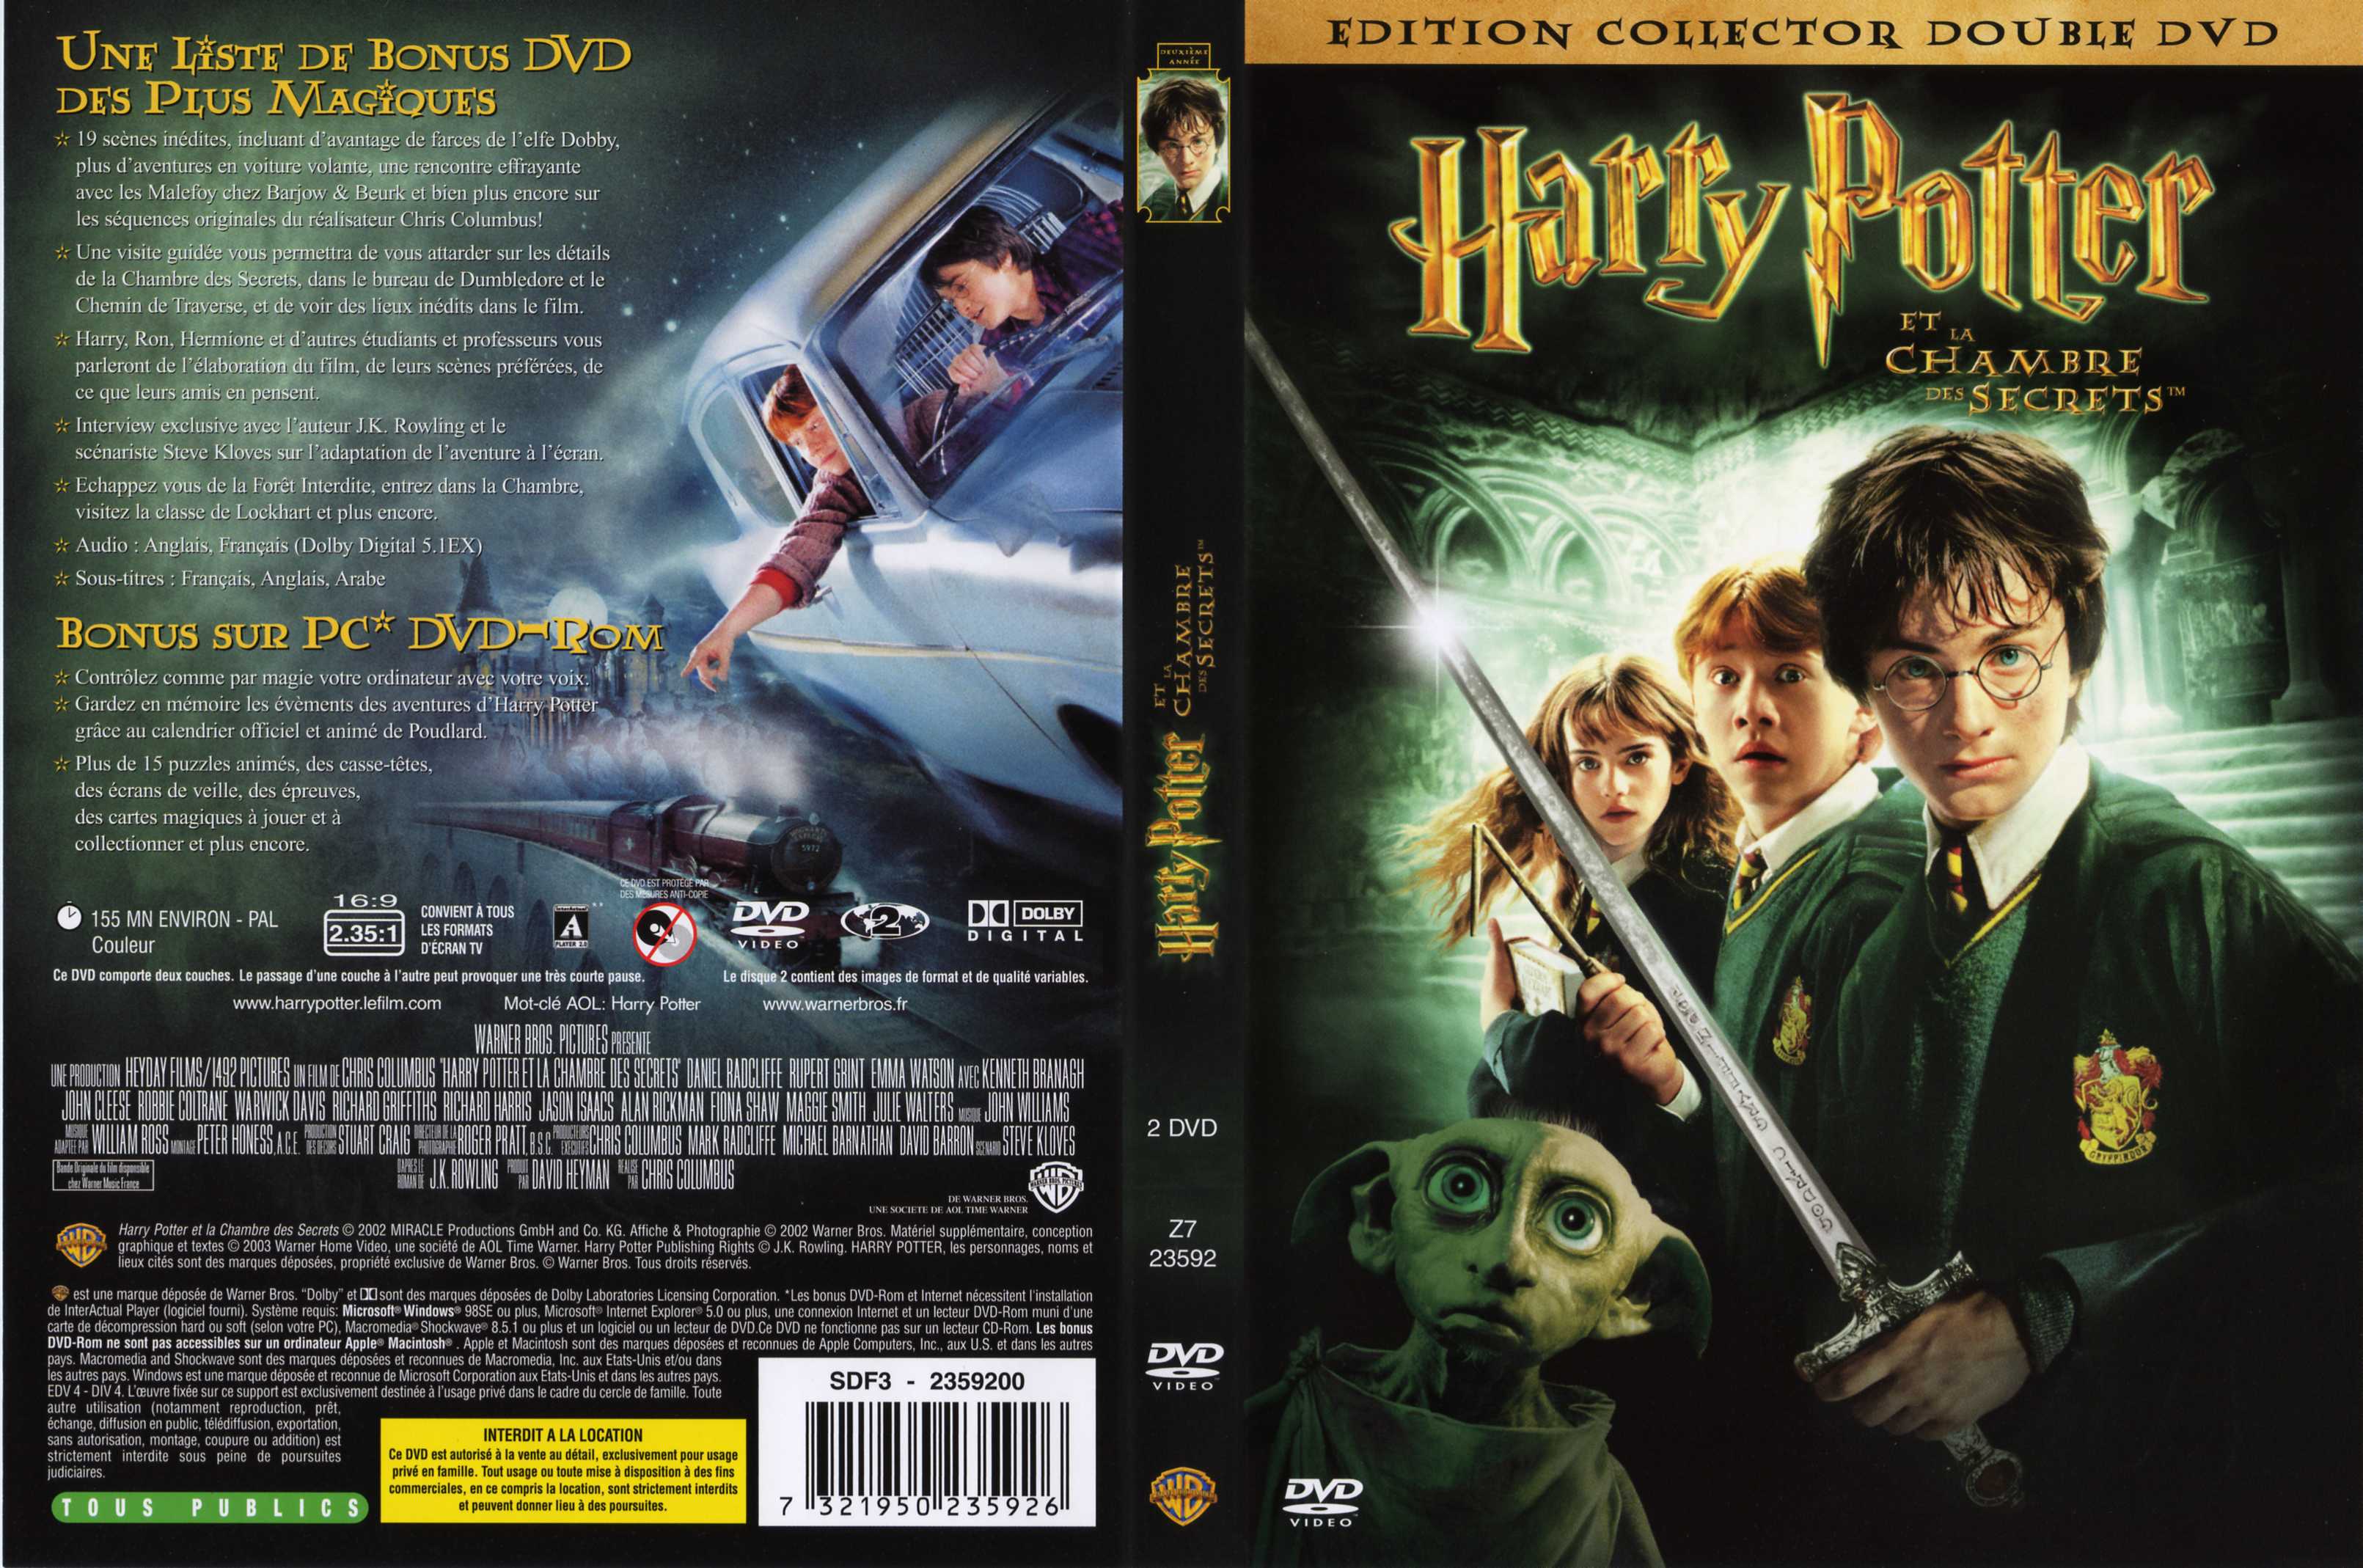 Jaquette DVD Harry Potter et la chambre des secrets v4